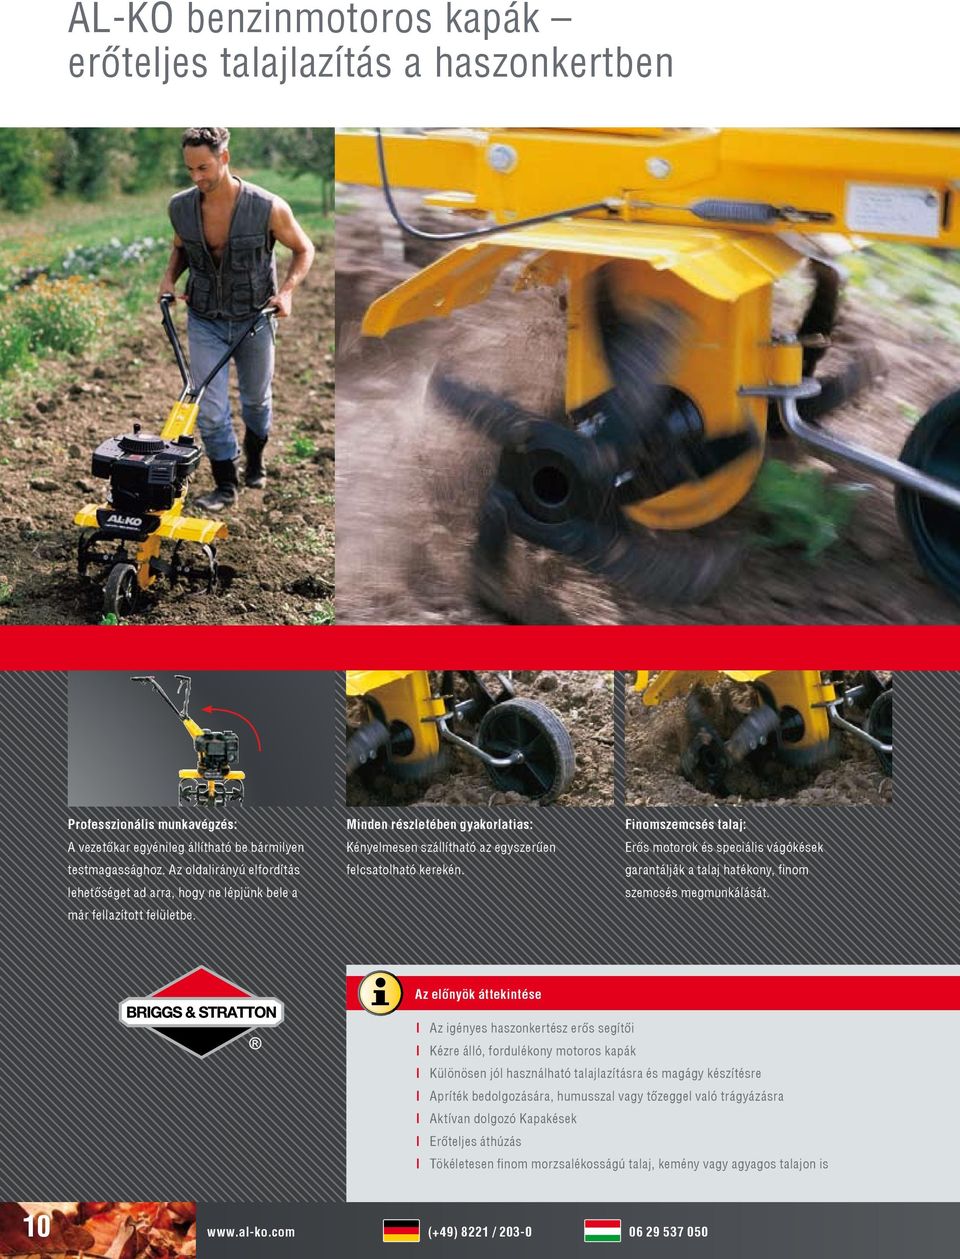 Finomszemcsés talaj: Erős motorok és speciális vágókések garantálják a talaj hatékony, finom szemcsés megmunkálását.